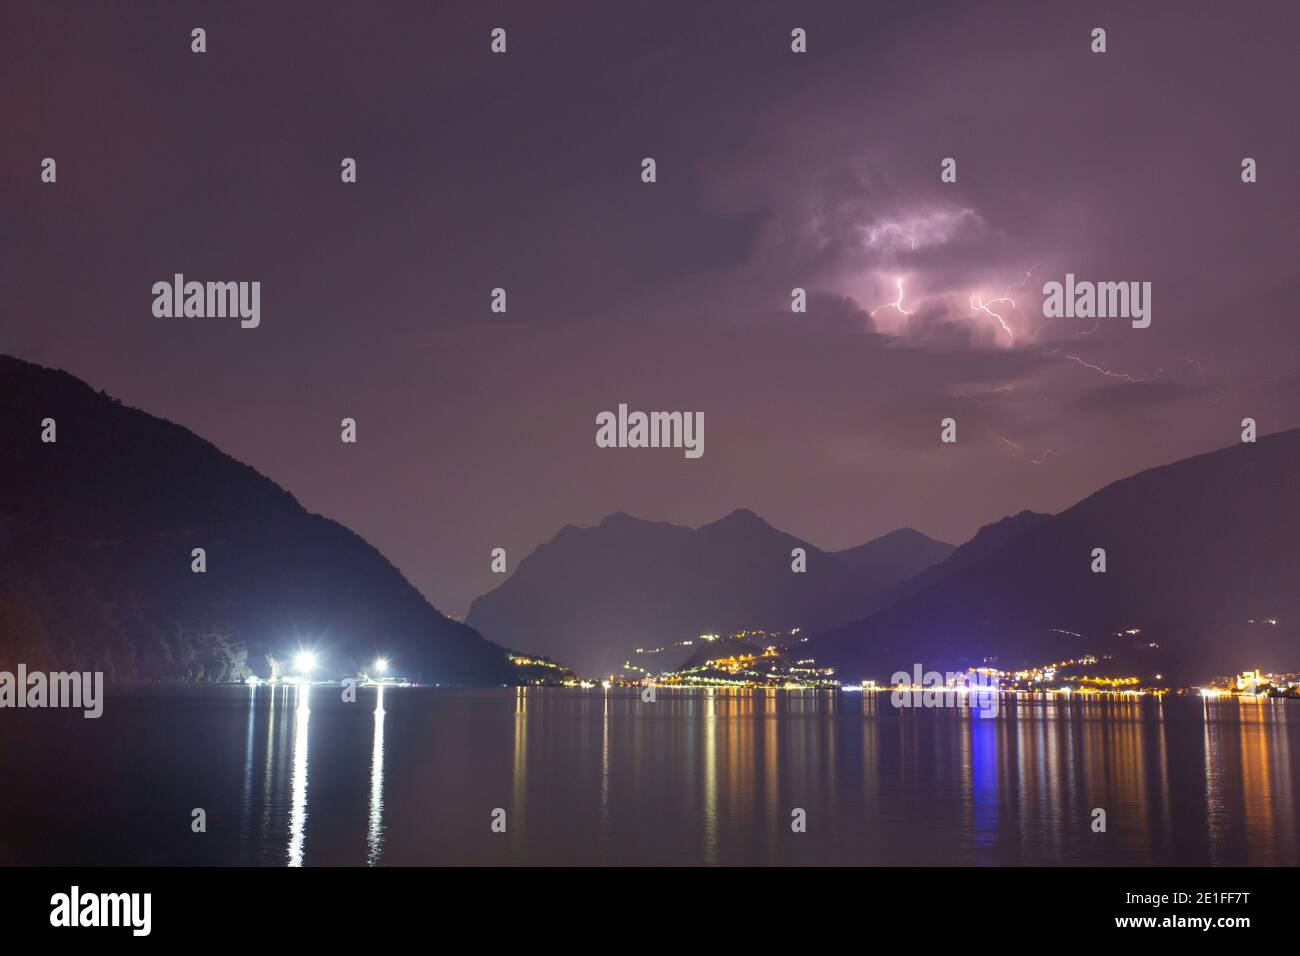 A lightning storm over lake Sulzano, Italy Stock Photo